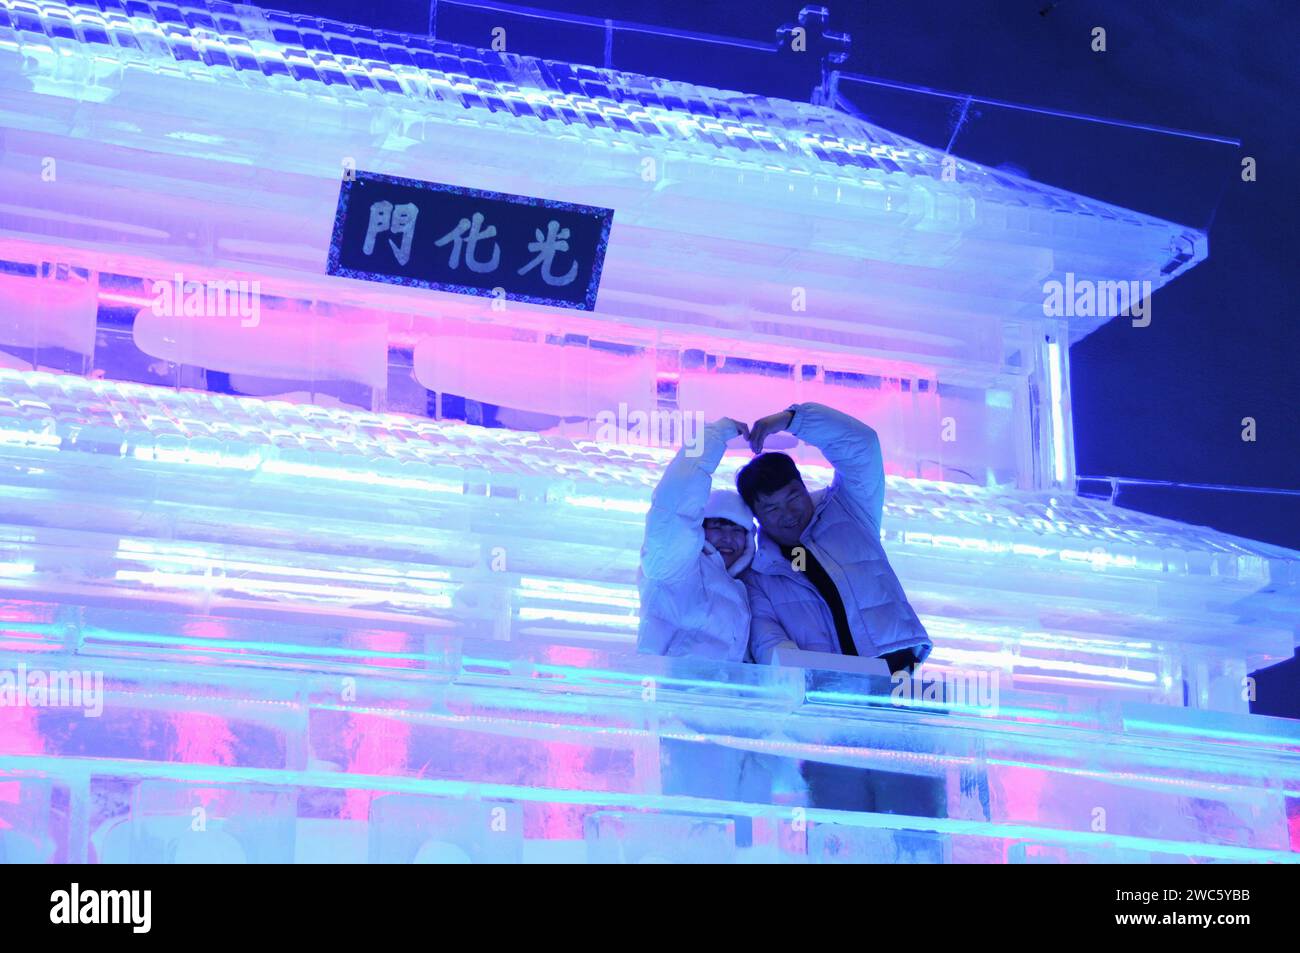 Provinz Gangwon, Südkorea. Januar 2024. Touristen posieren für Bilder vor den Gwanghwamun-Statuen, die Harbin Eisbildhauer während des Hwacheon Sancheoneo Ice Festivals in der Provinz Gangwon, Südkorea, am 13. Januar 2024 gemacht haben. Harbin, die Hauptstadt von Chinas nördlichster Provinz Heilongjiang, ist bekannt als das „Kronjuwel aus Eis und Schnee“ des Landes. Dieses Jahr wurden Eisskulpturen aus Harbin für das Hwacheon Sancheoneo Ice Festival, eines der beliebtesten südkoreanischen Winterfestivals, eingeladen. Quelle: Yang Chang/Xinhua/Alamy Live News Stockfoto